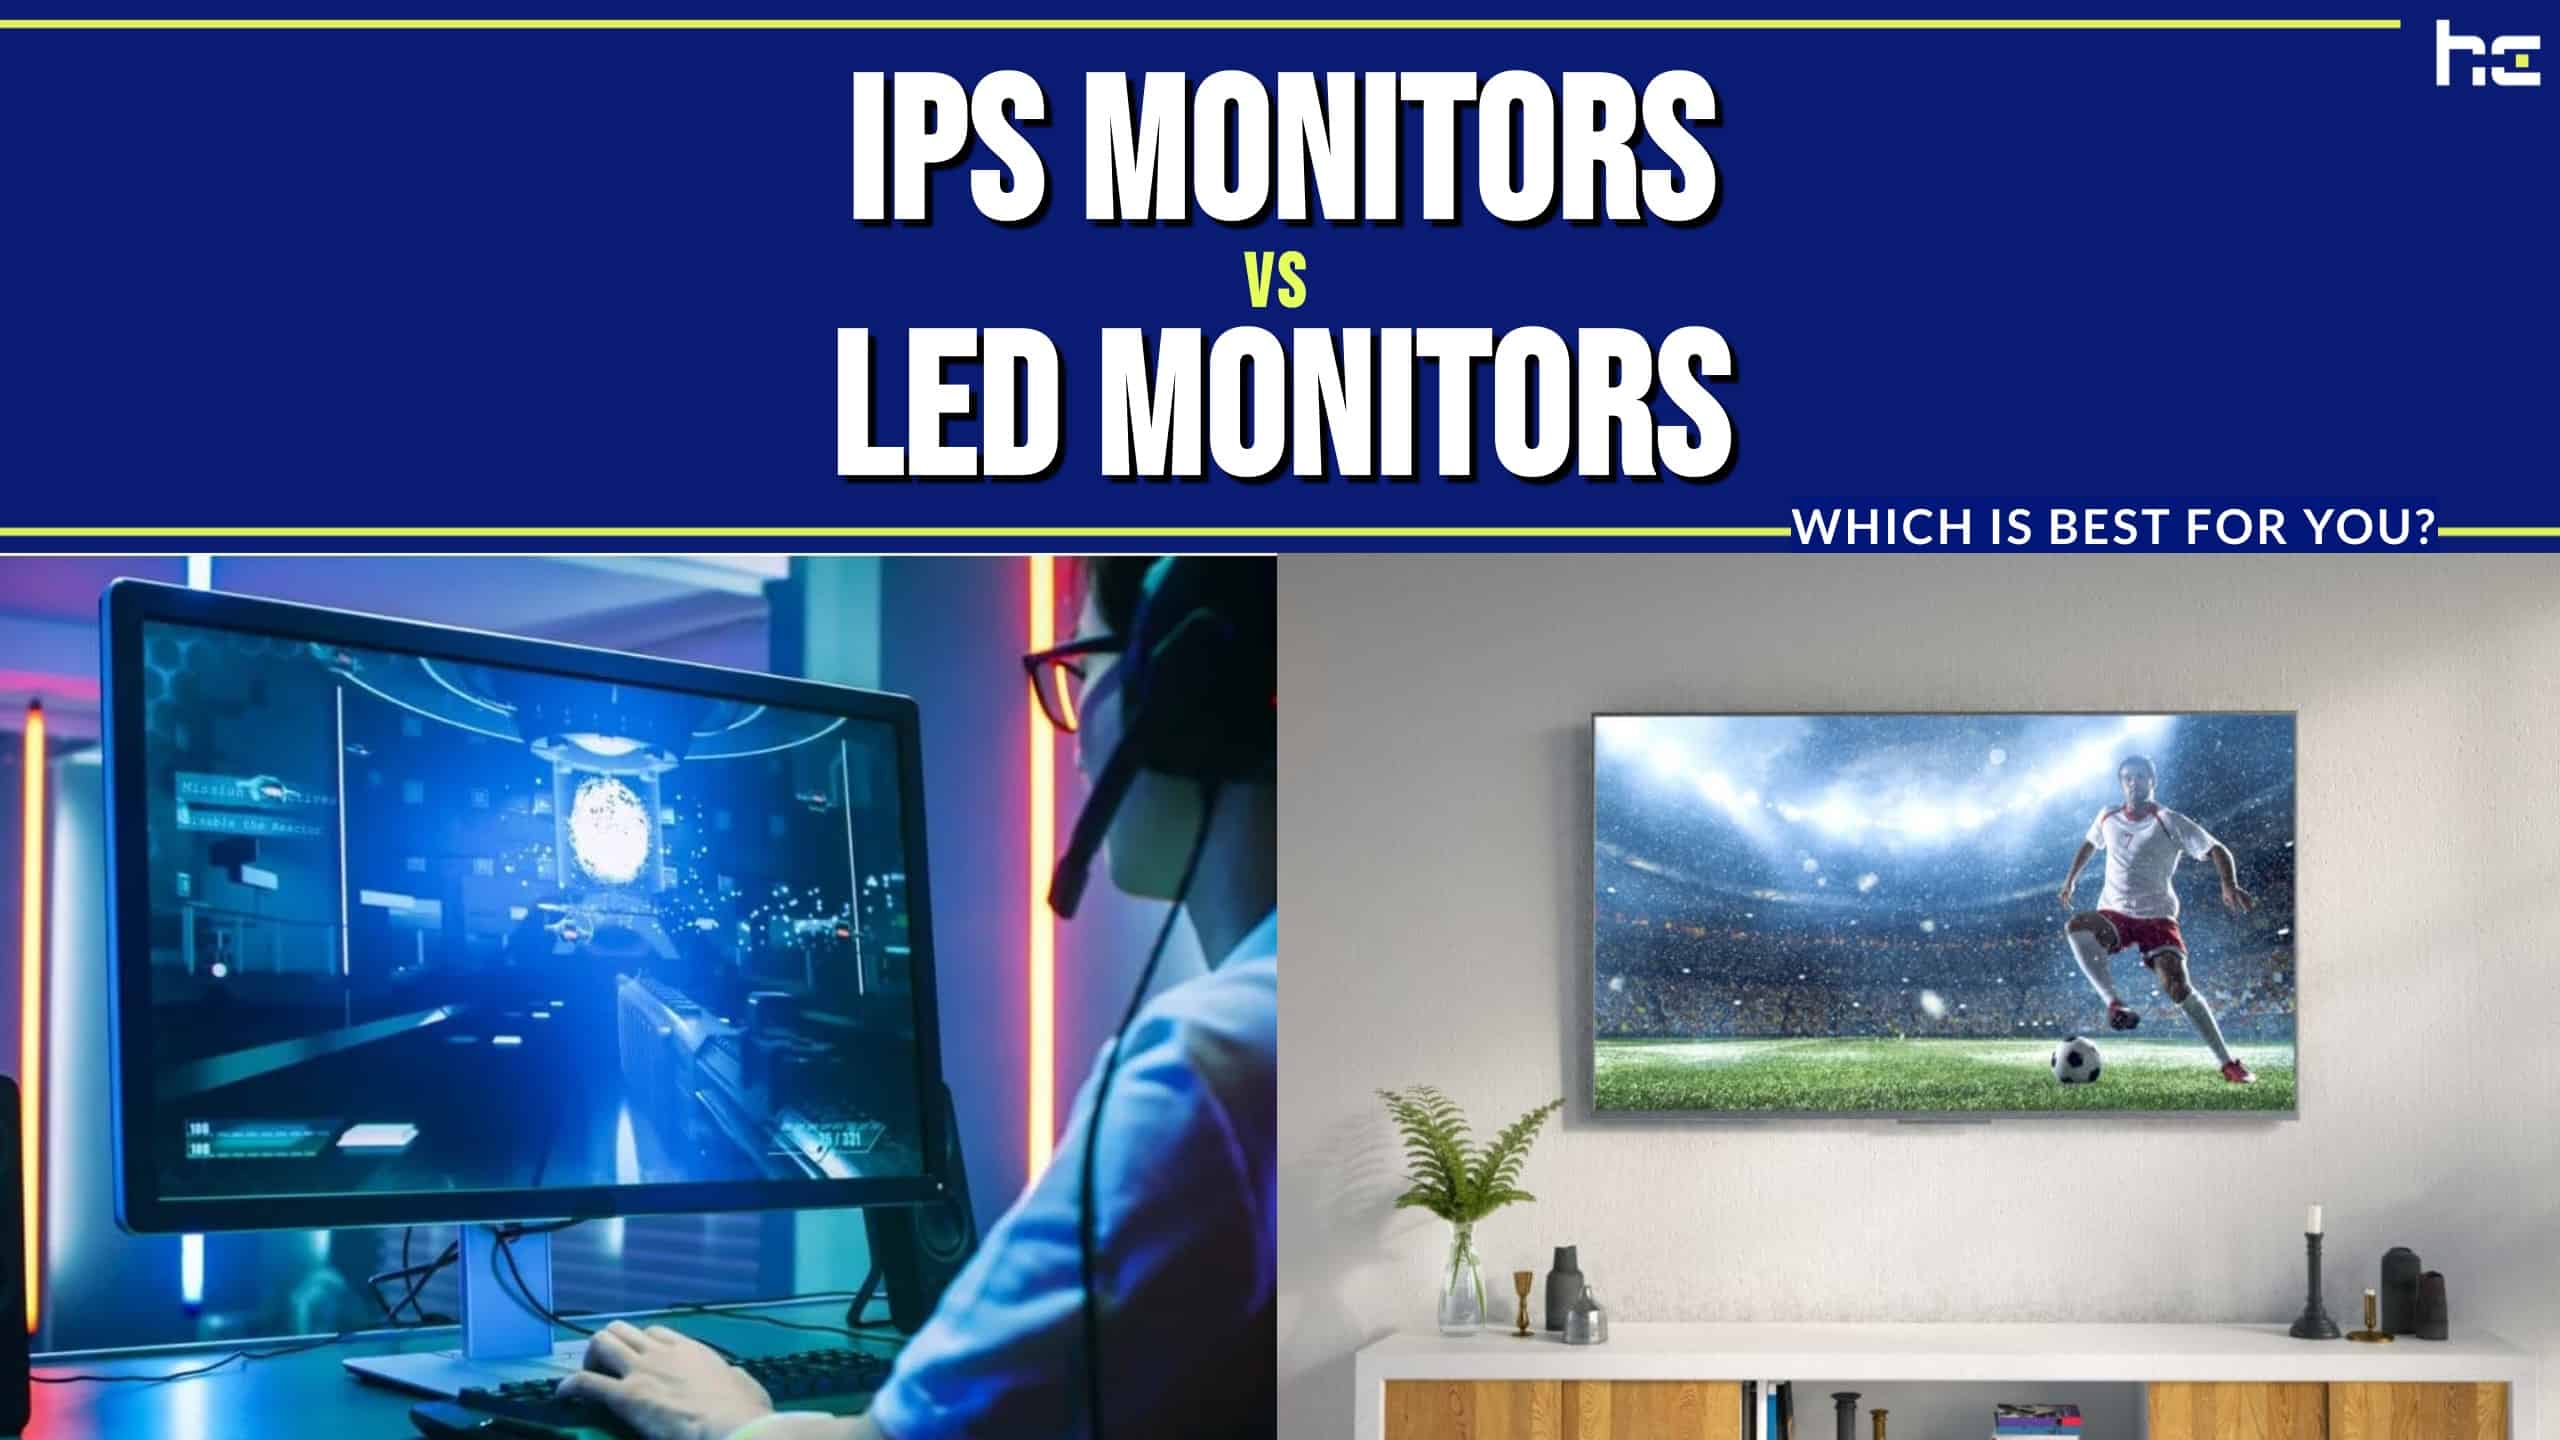 IPS Monitos vs LED Monitors